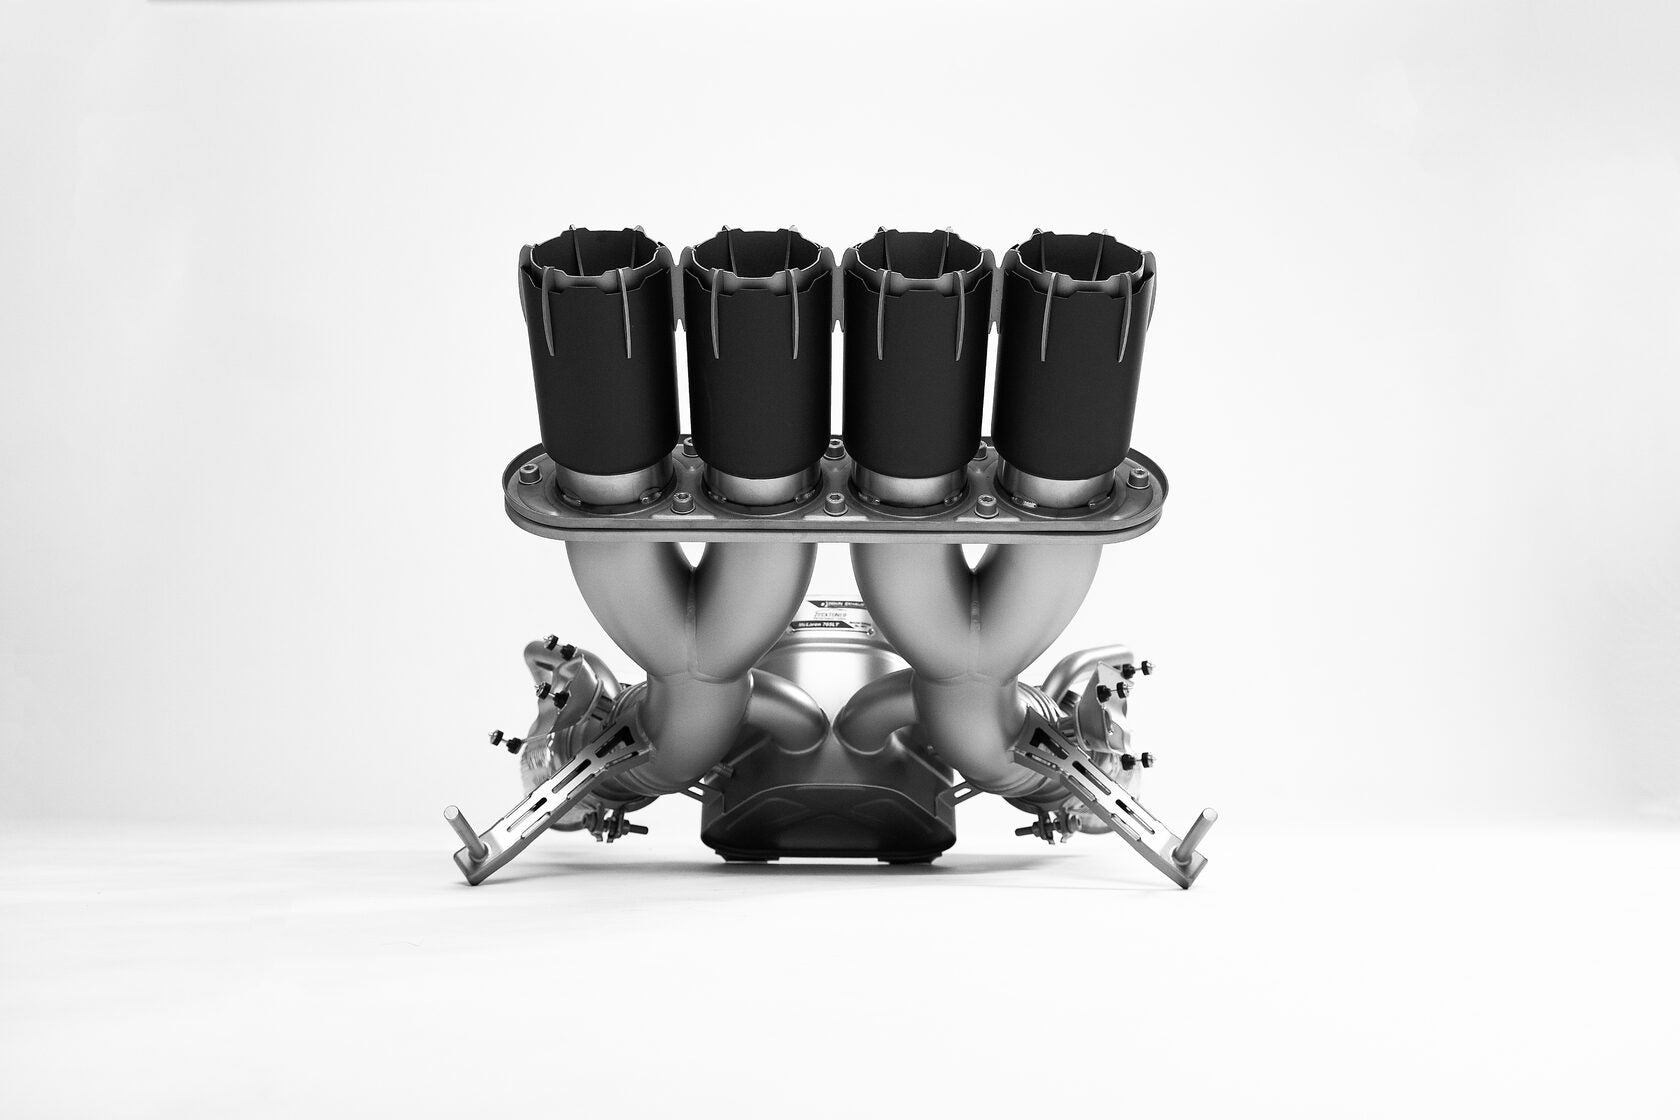 DEIKIN 10-McLaren.765LT-ES-Ti-06 Exhaust system Titan for McLaren 765LT включая даунпайп с thermal insulation HeatShield Black Ceramic Photo-22 